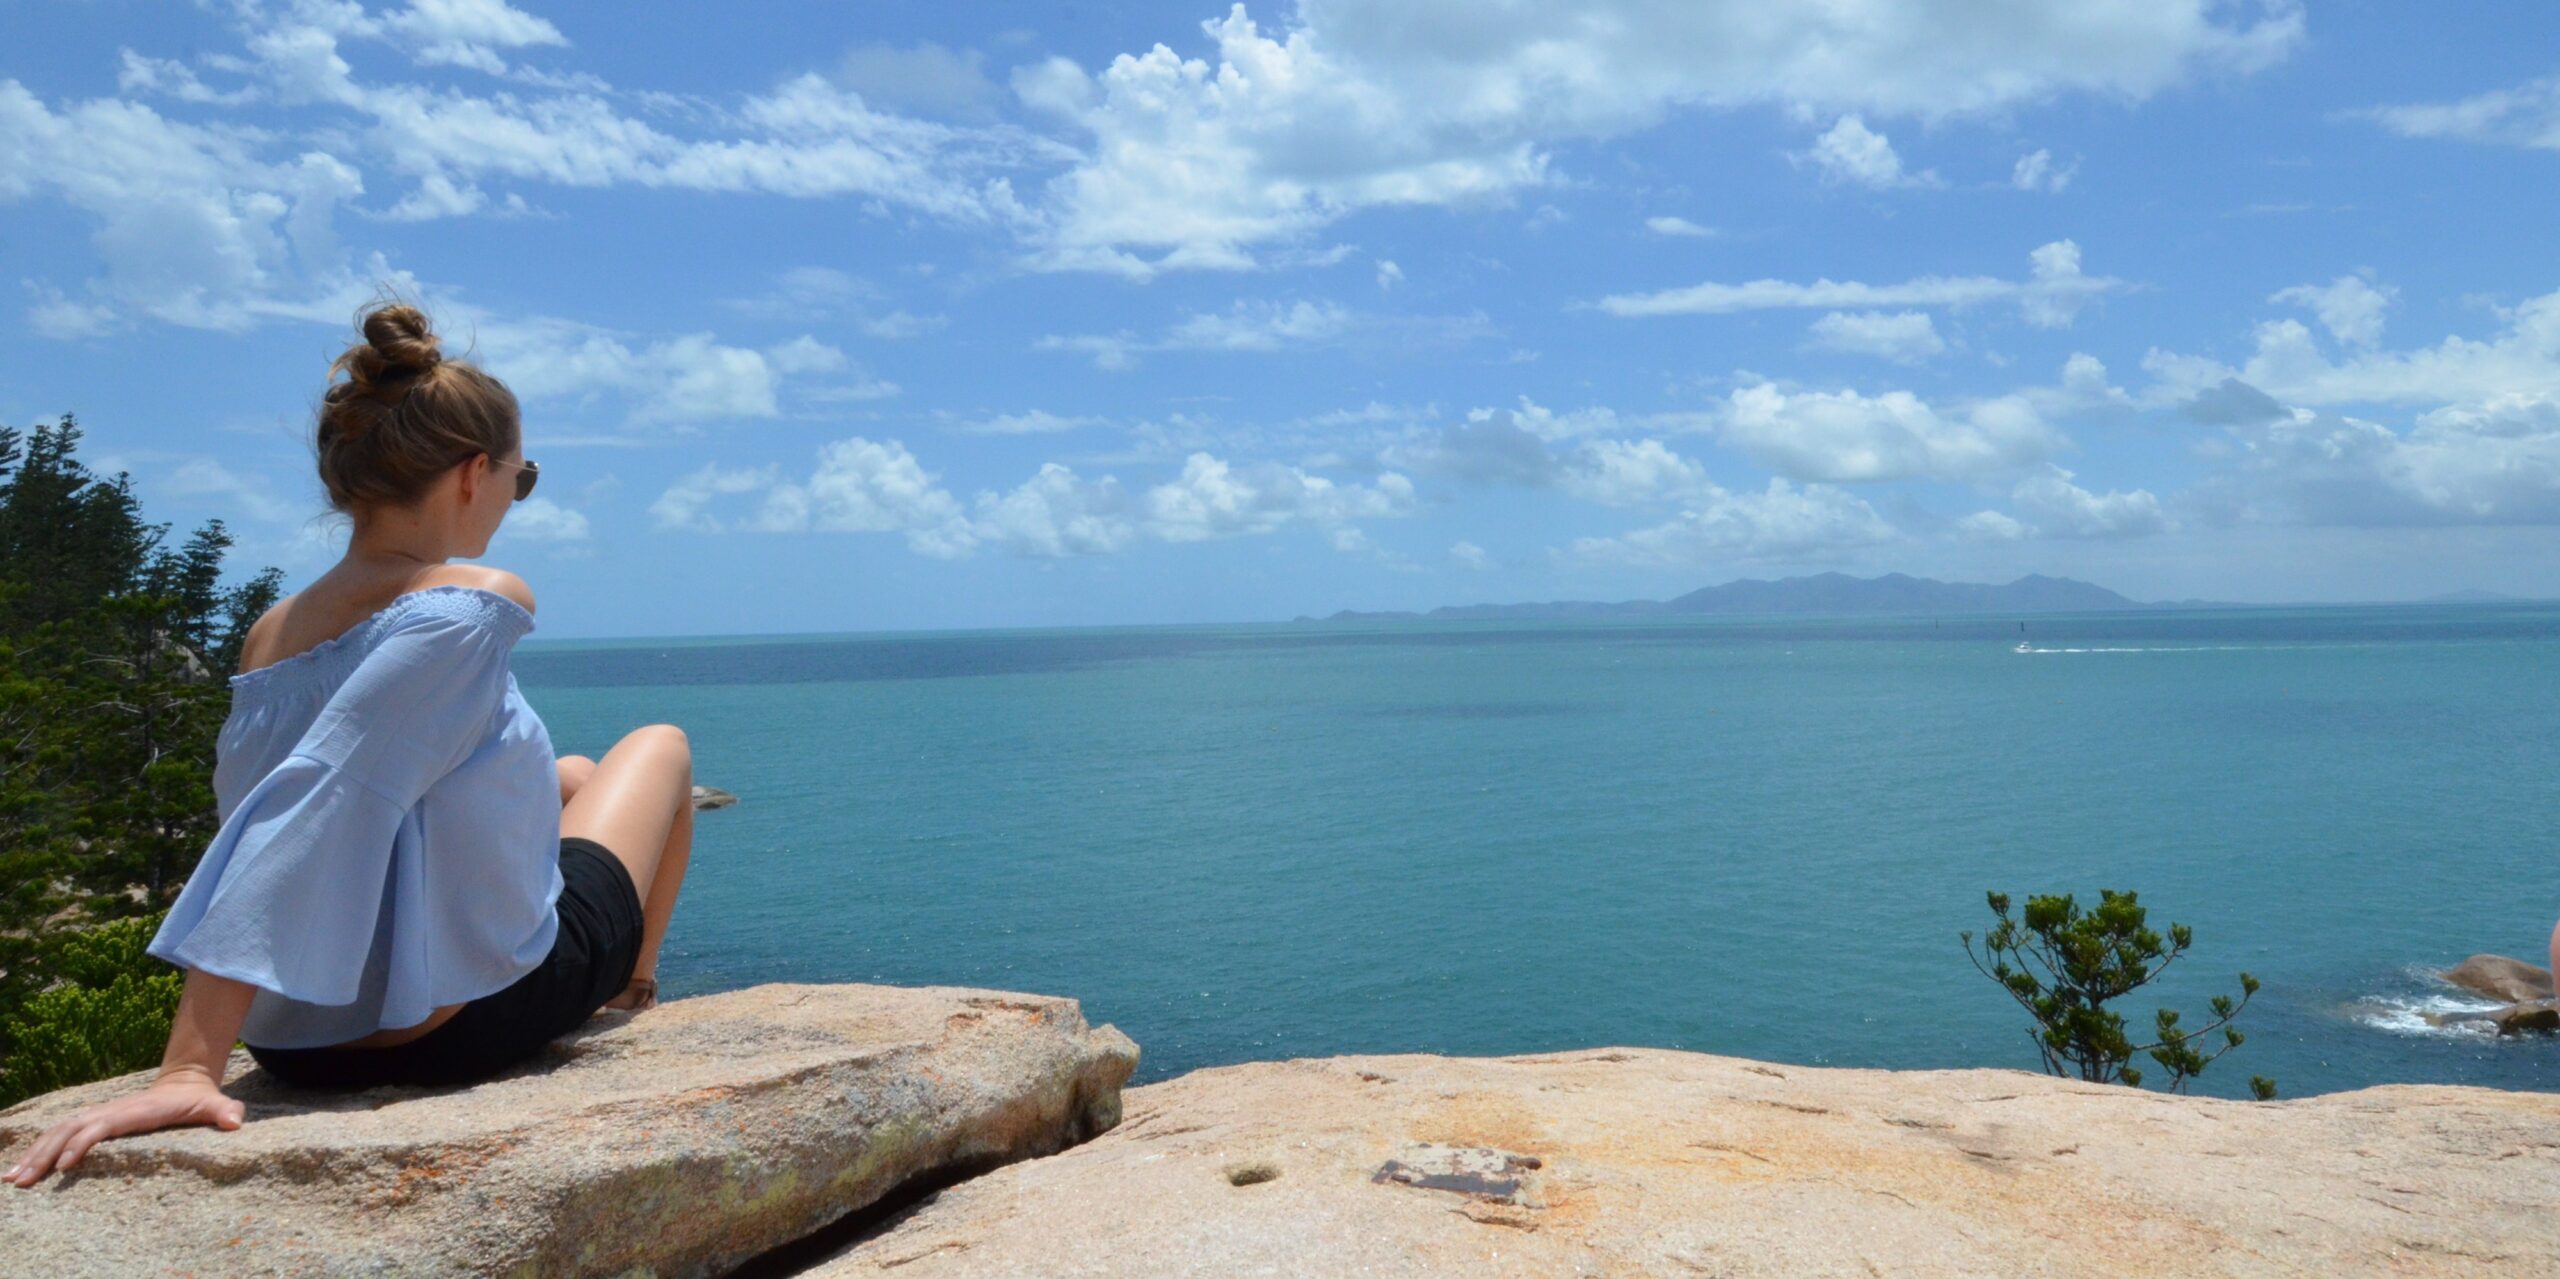 Po lewej siedząca tyłem na skale kobieta, w u dołu skała, w centralnej części ocean, u góry niebo z chmurami.